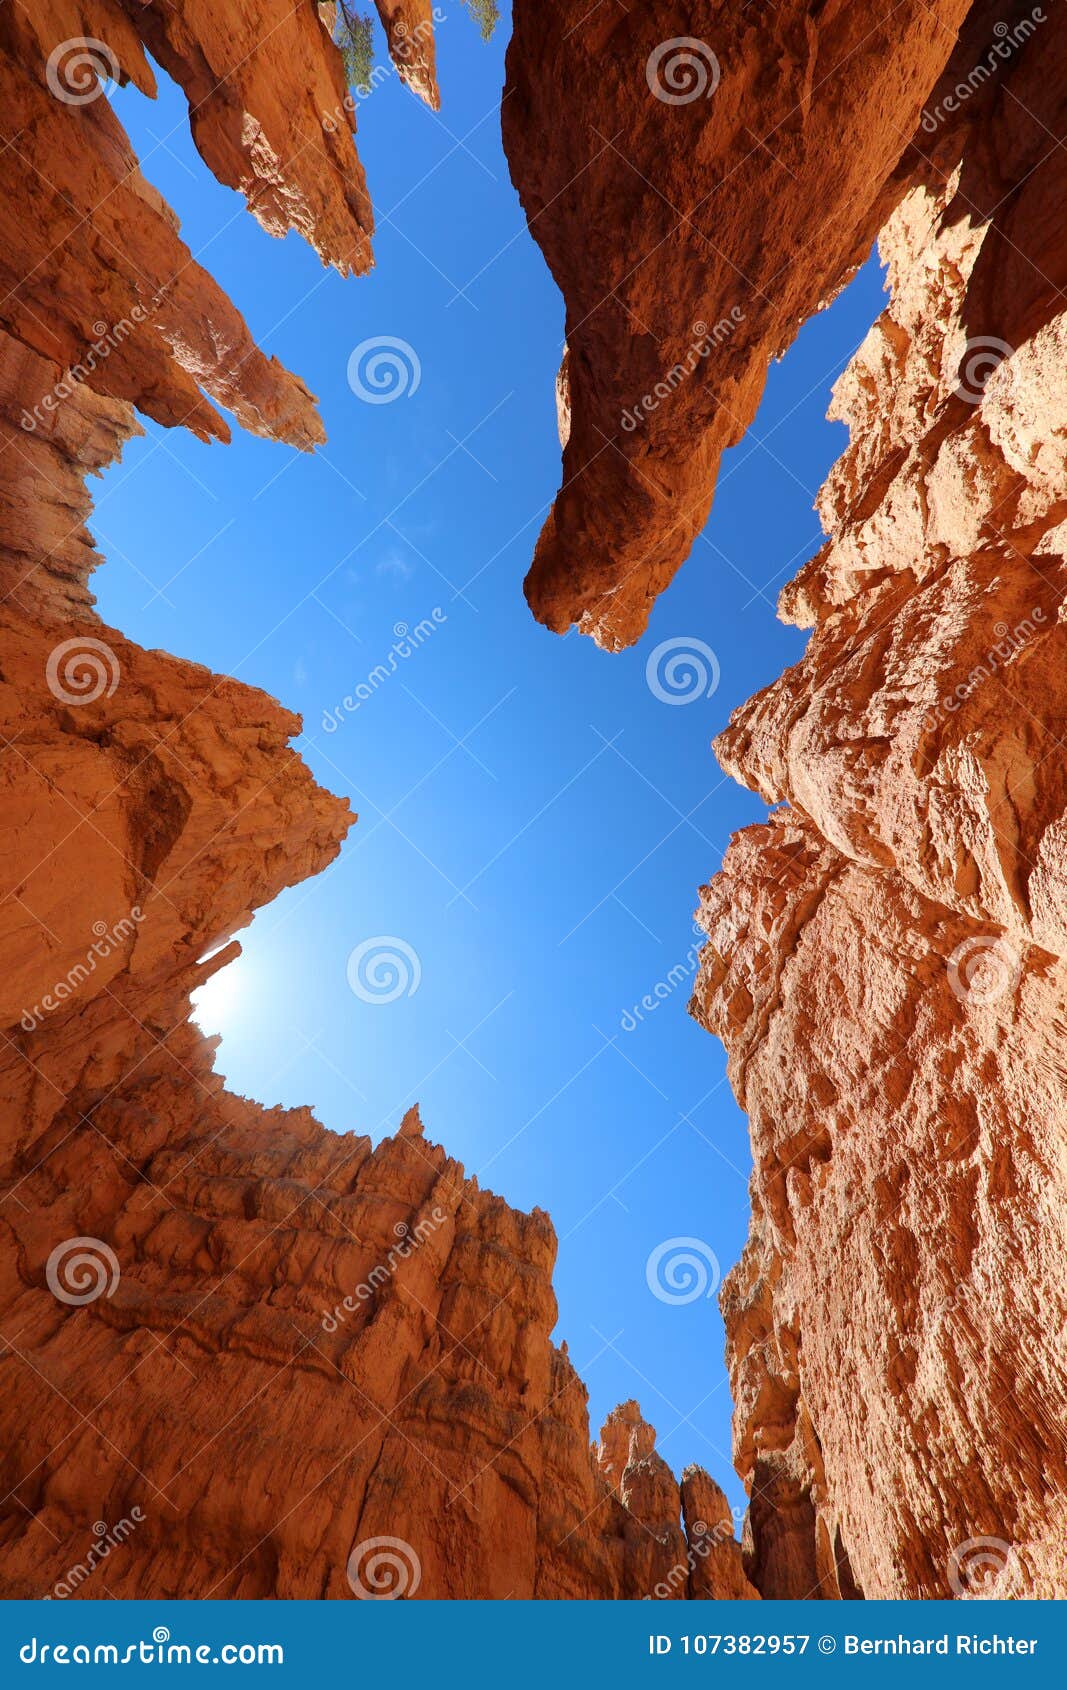 rock hoodoos in bryce canyon national park in utah